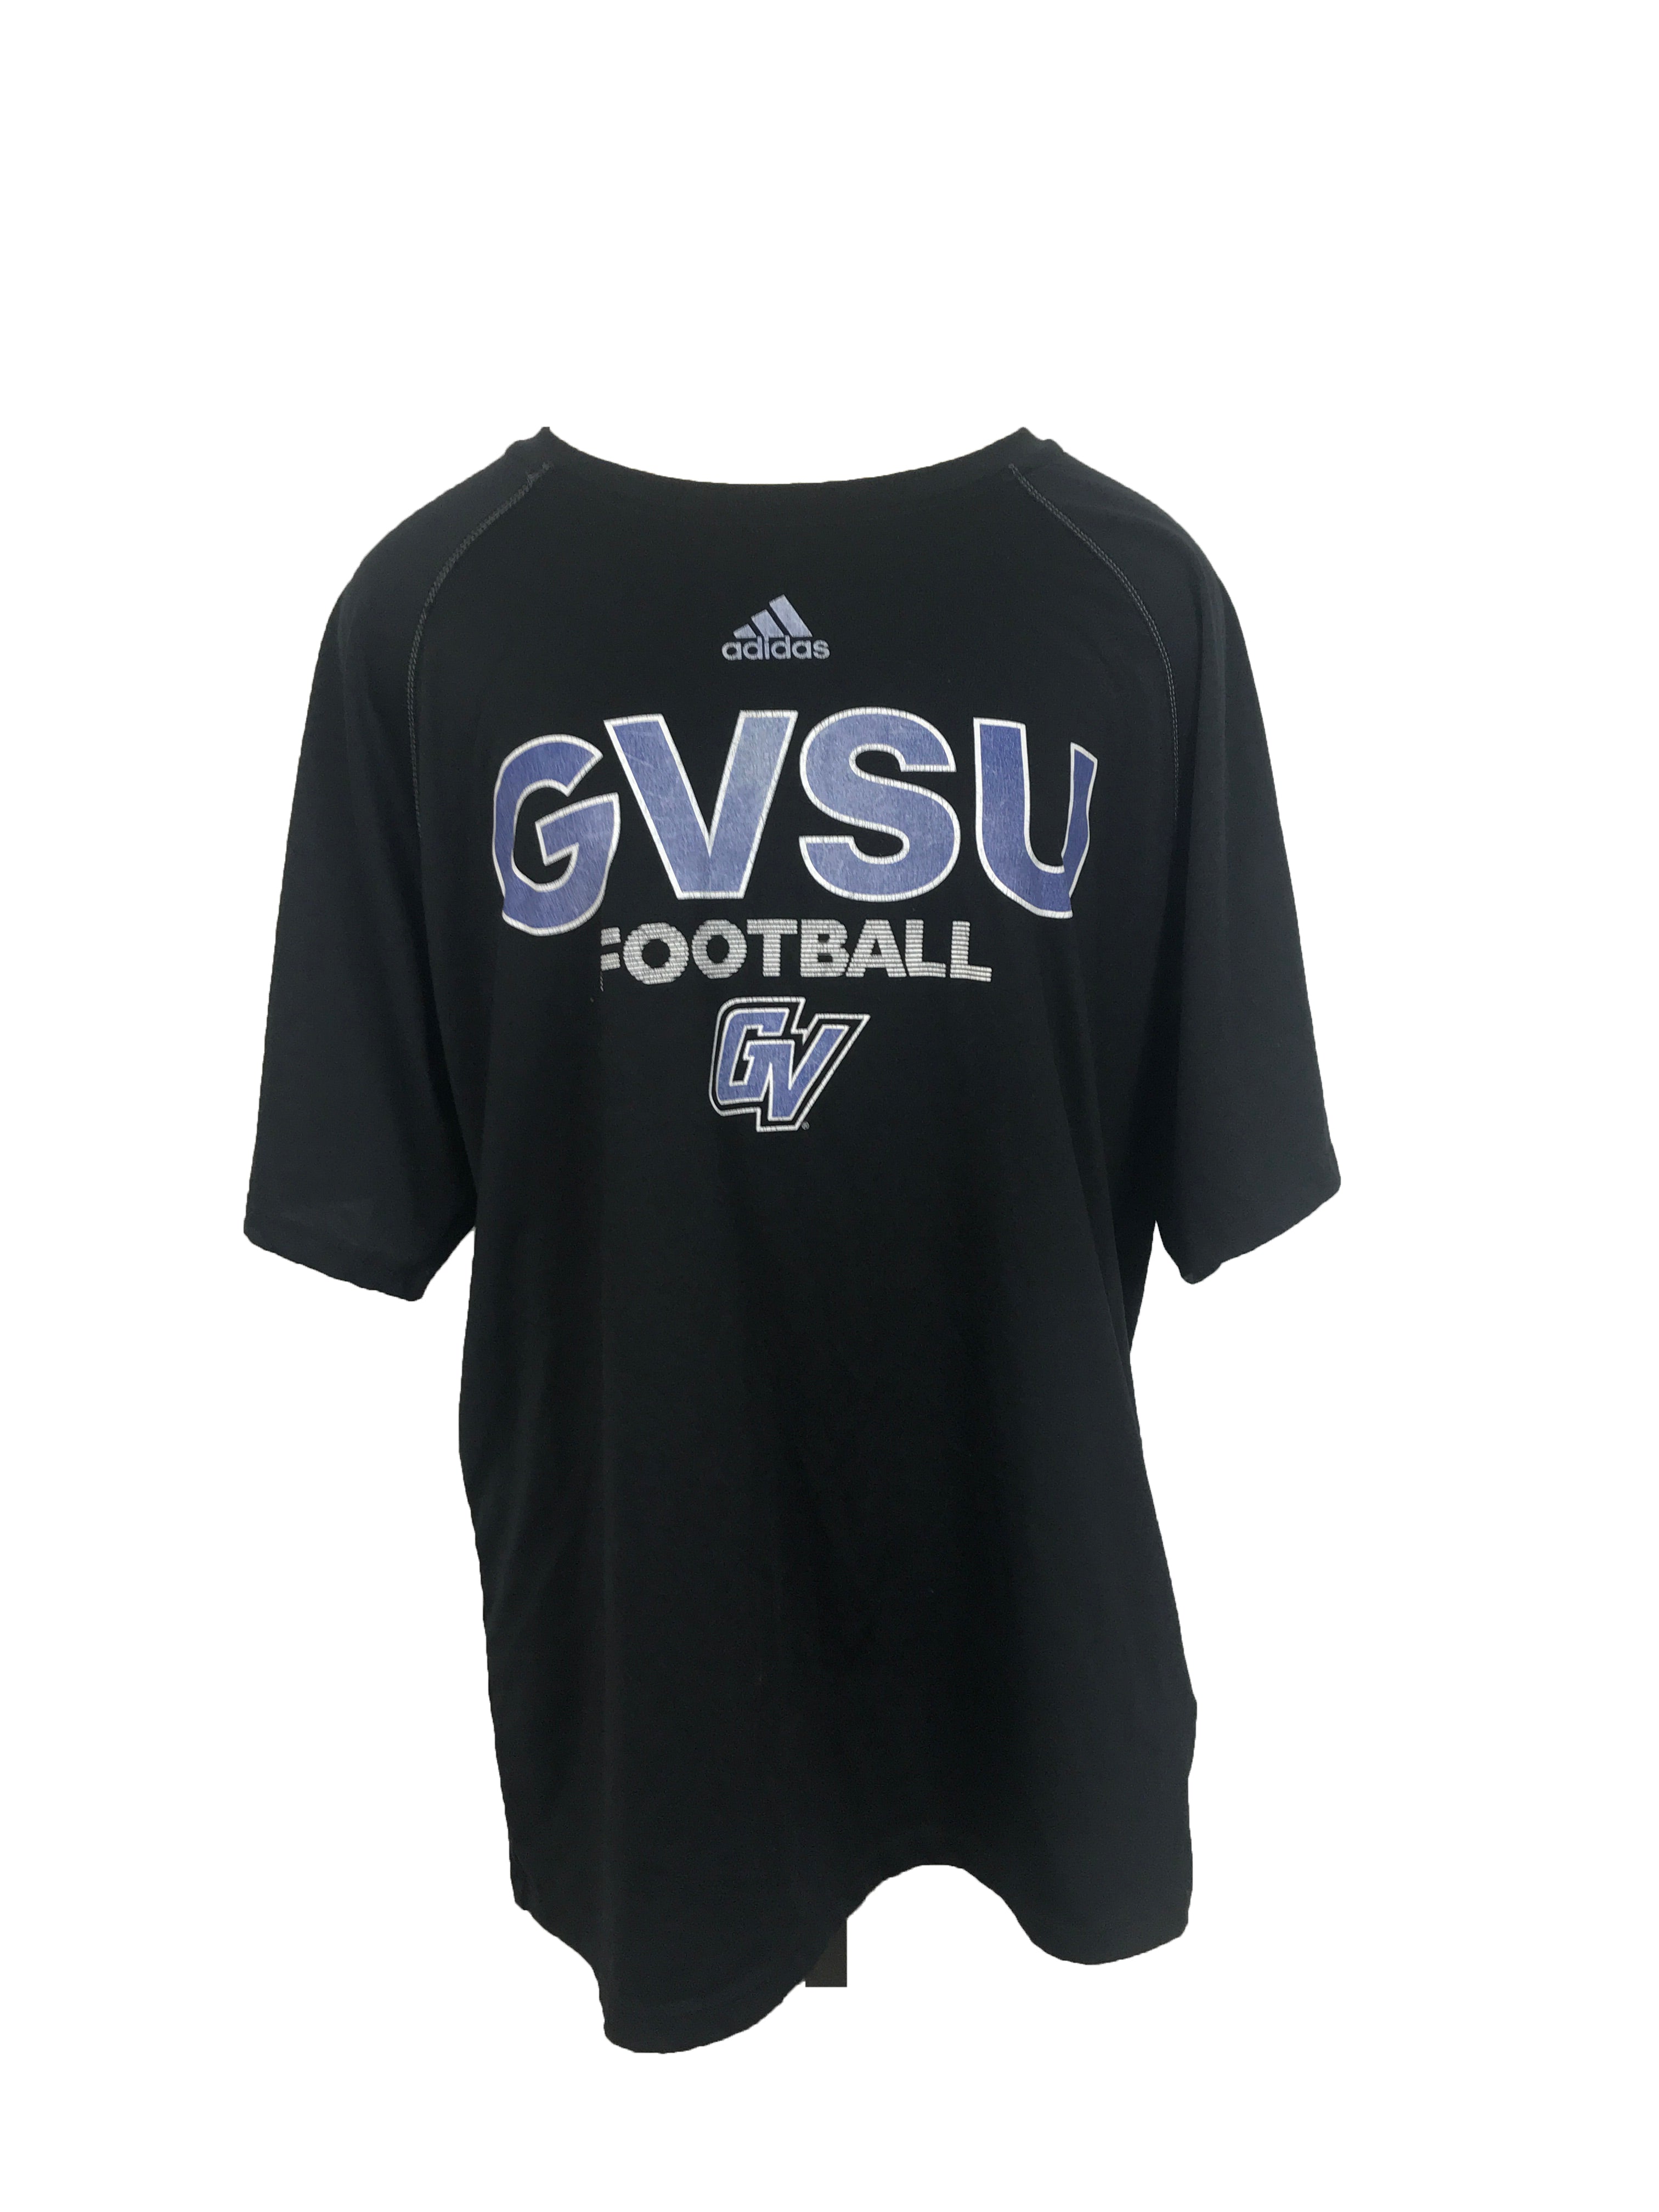 Adidas Black GVSU Football T-Shirt Unisex Size Large